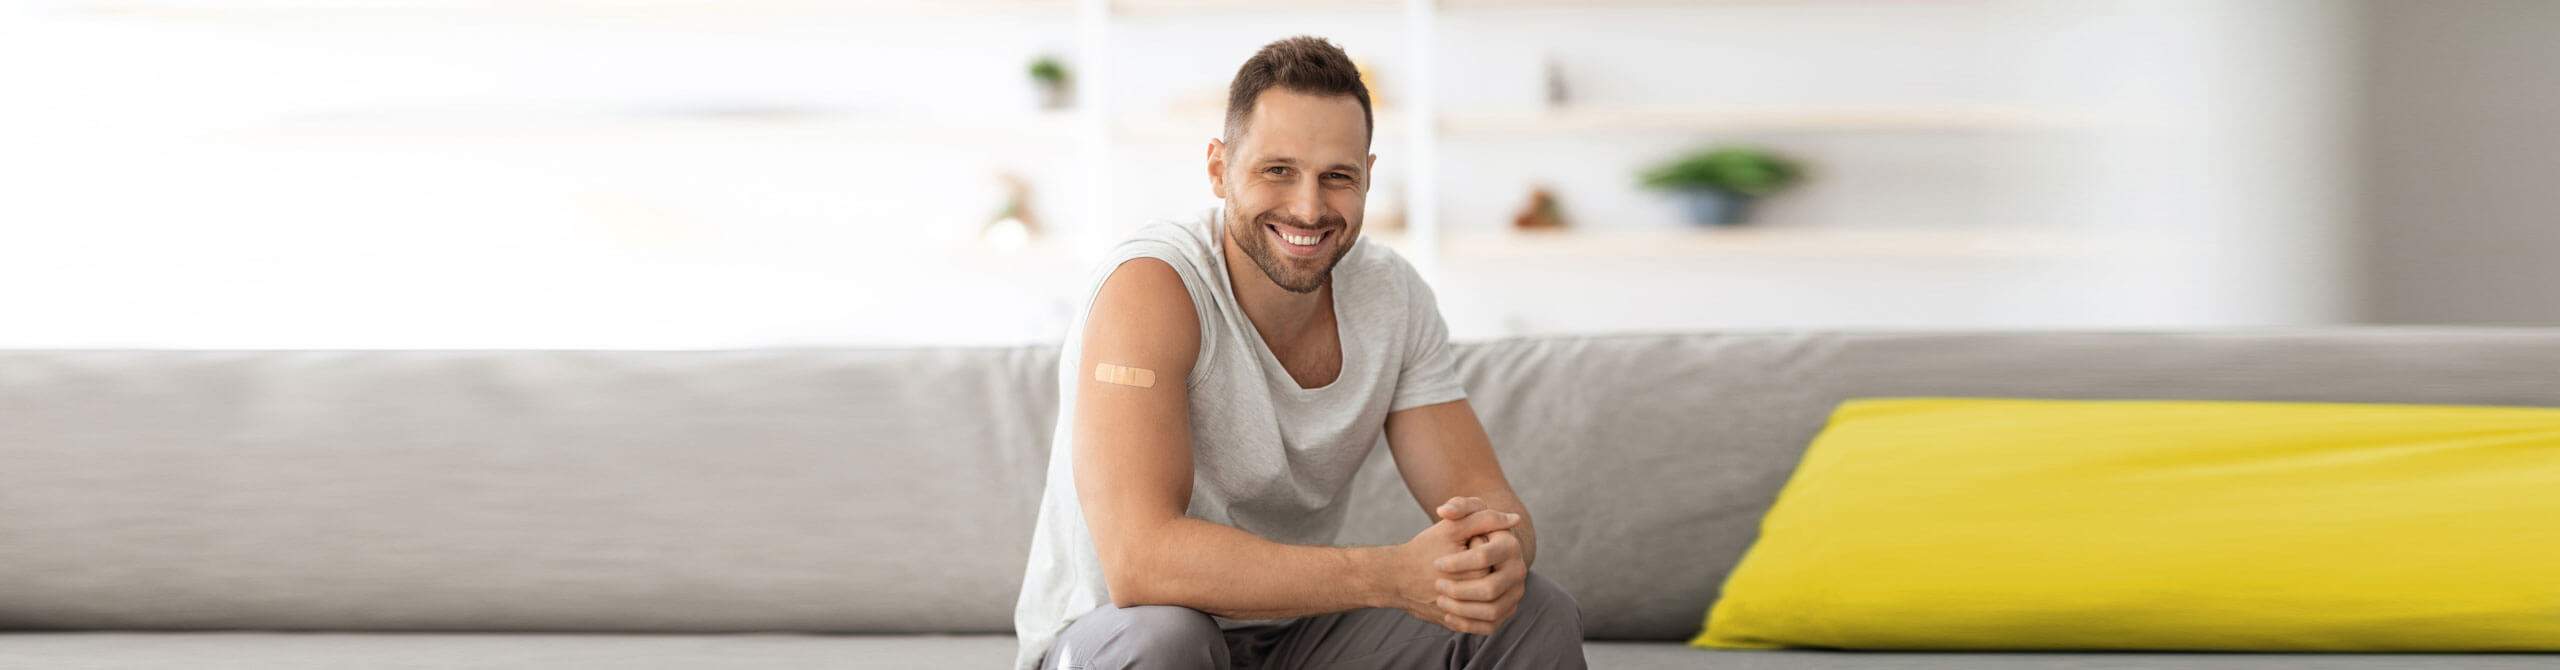 Ein junger Mann mit einem Pflaster auf dem Oberarm sitzt lächelnd auf einem Sofa